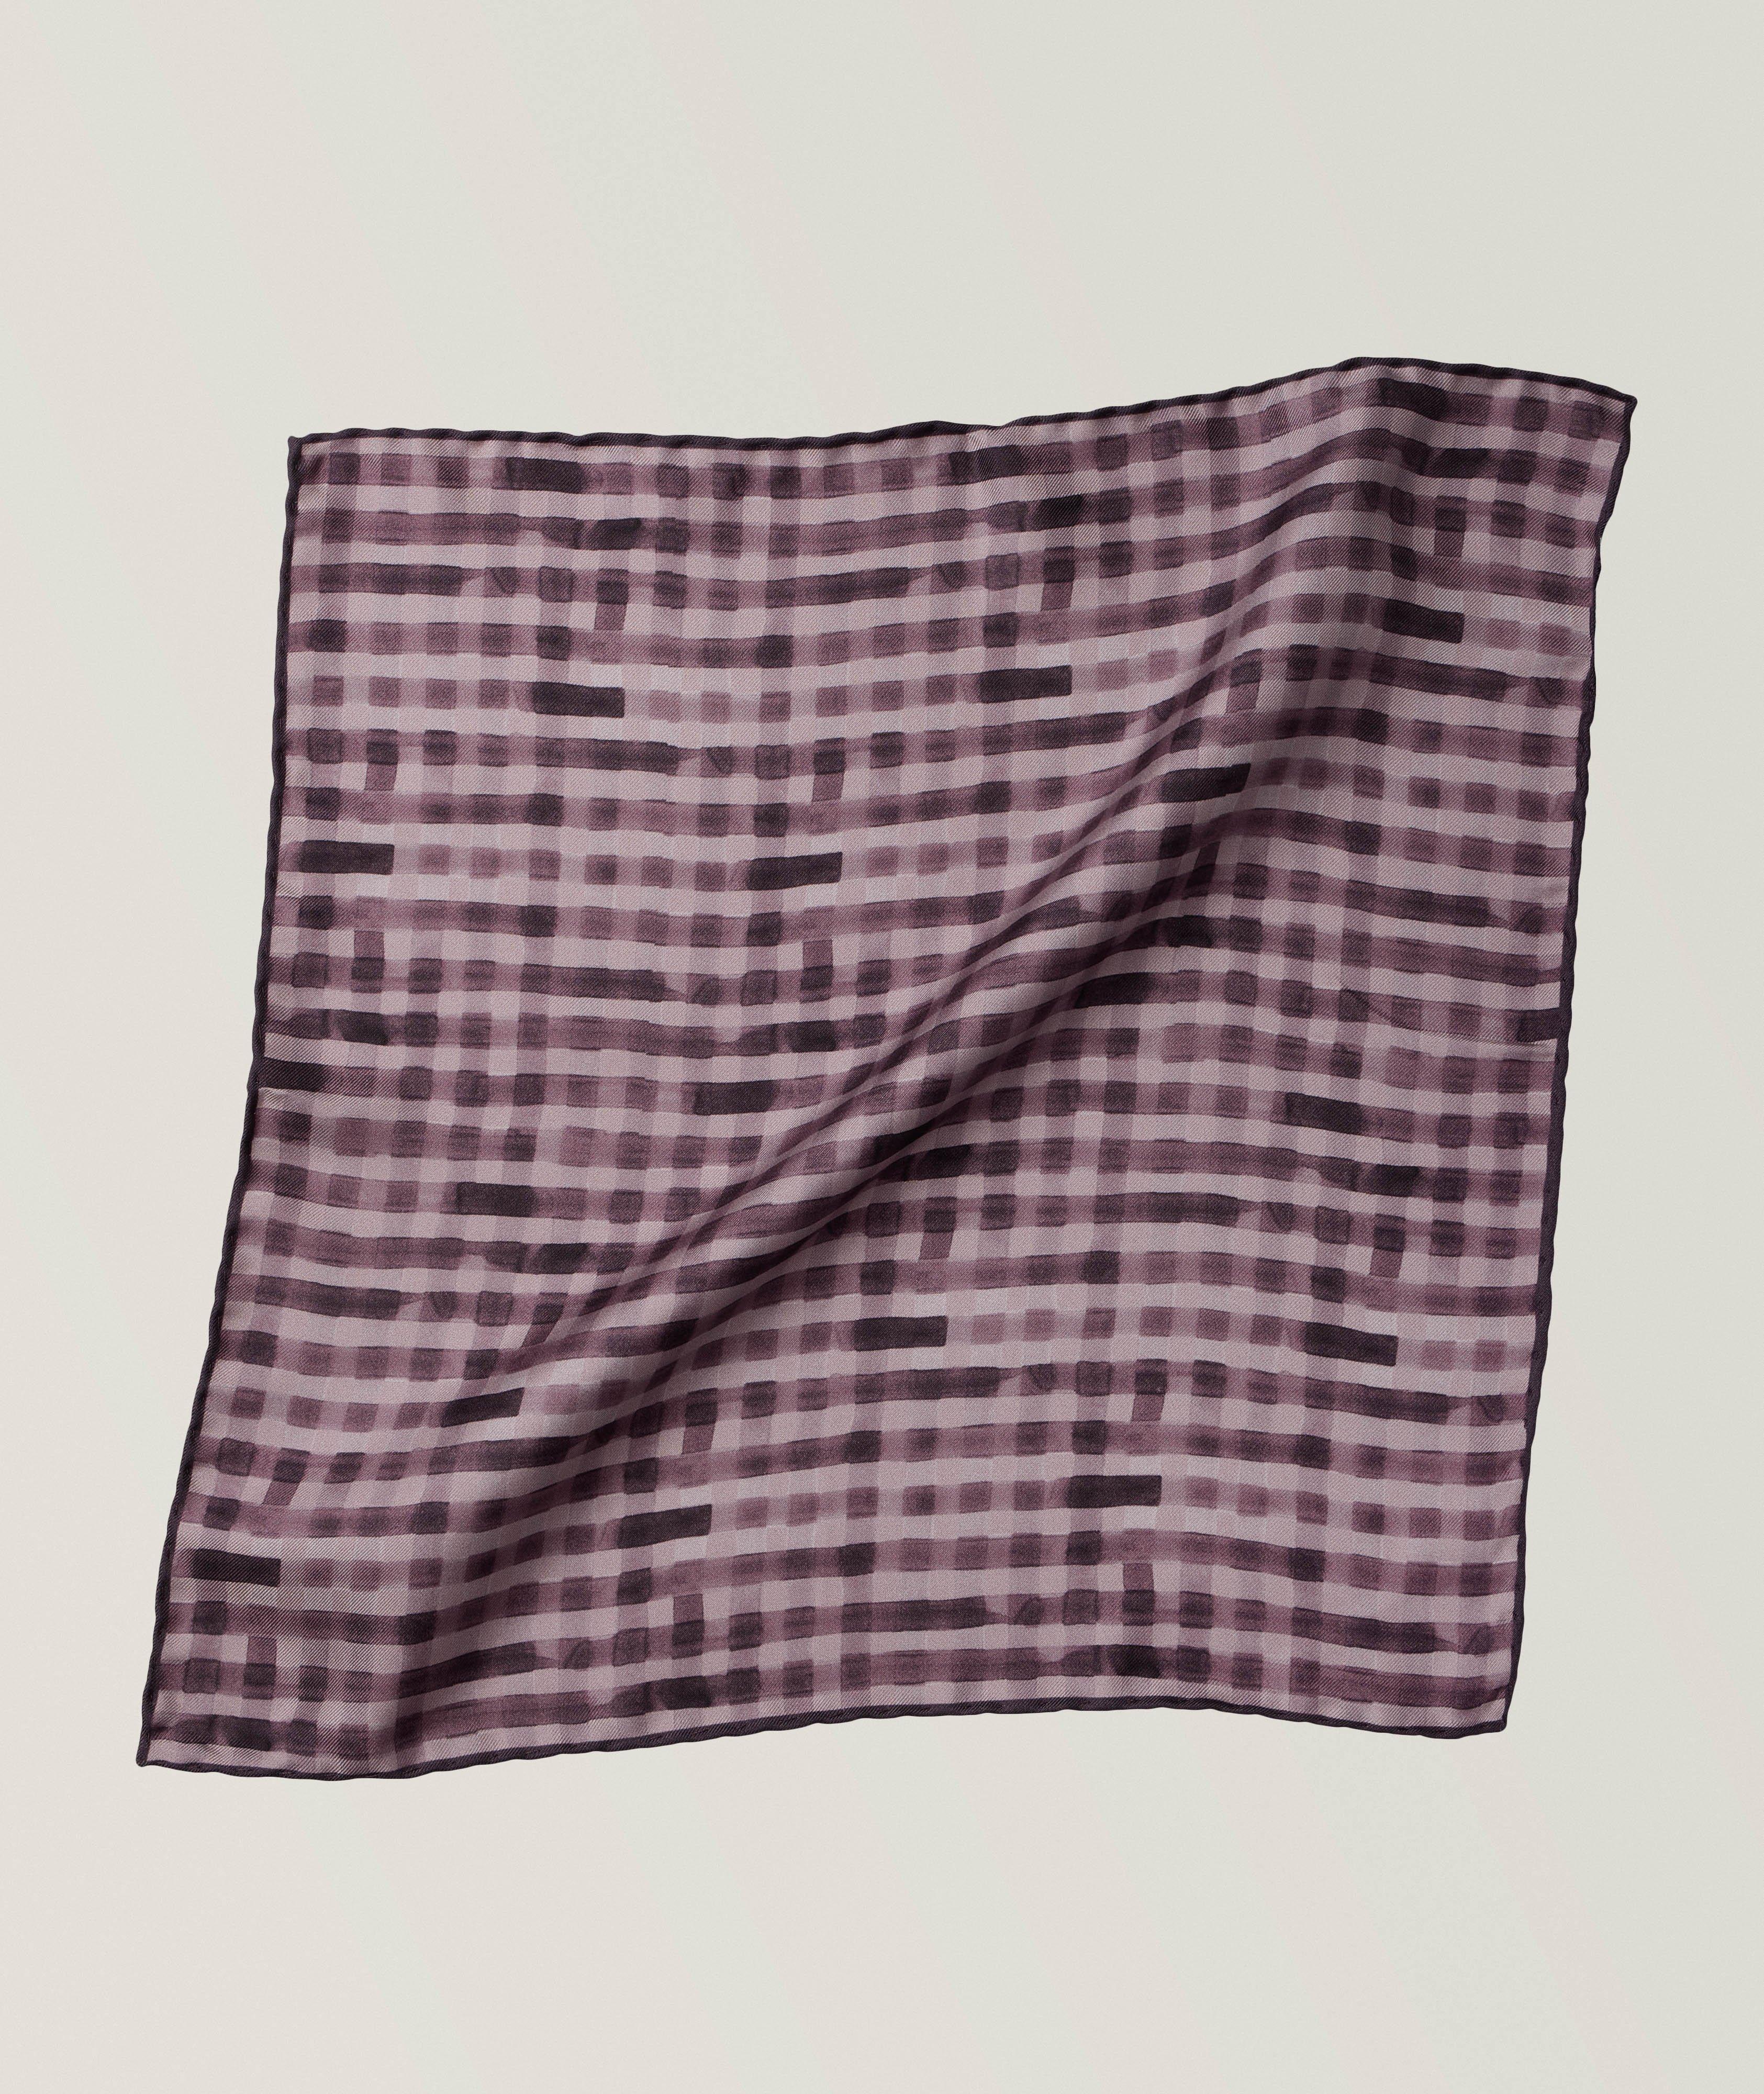 Mouchoir de poche en soie à motif quadrillé image 0